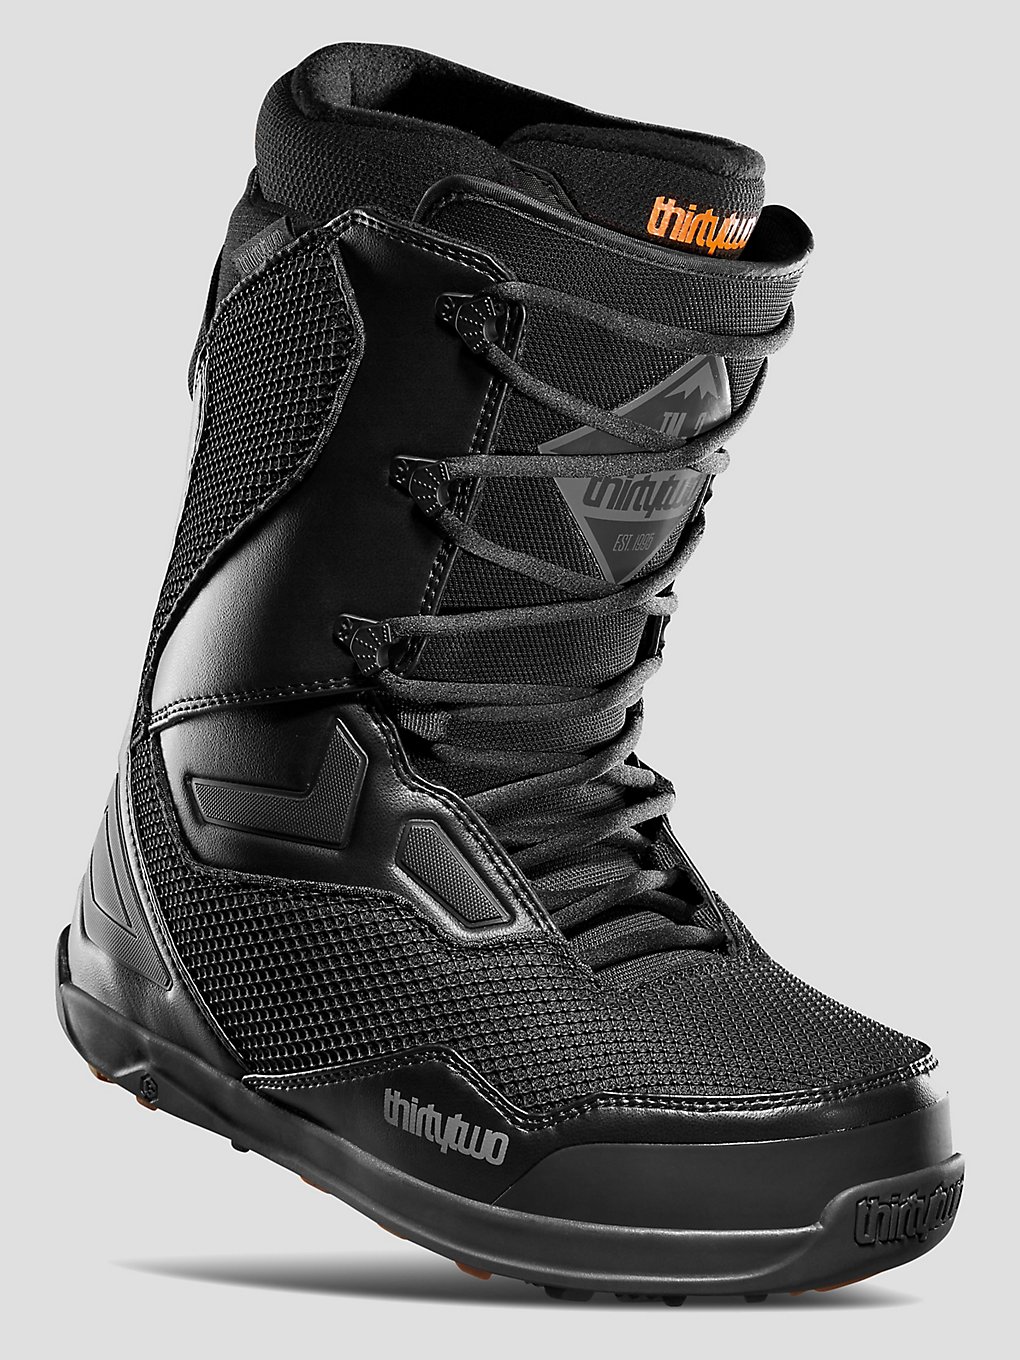 ThirtyTwo TM 2 Snowboard-Boots black kaufen